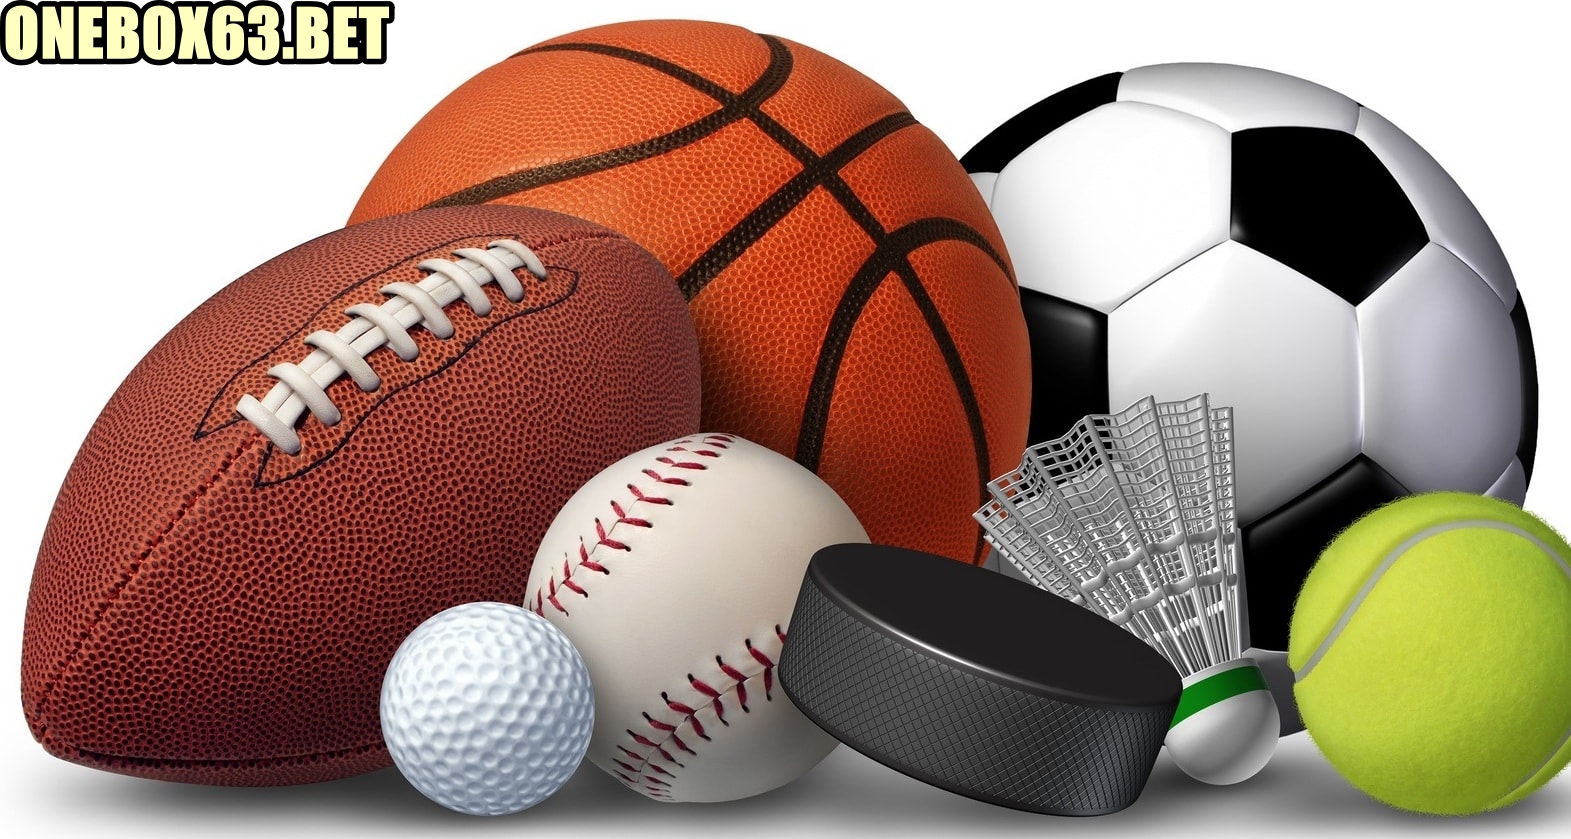 Chuyên mục “Thể thao” tại trang web Onebox63.bet là gì?